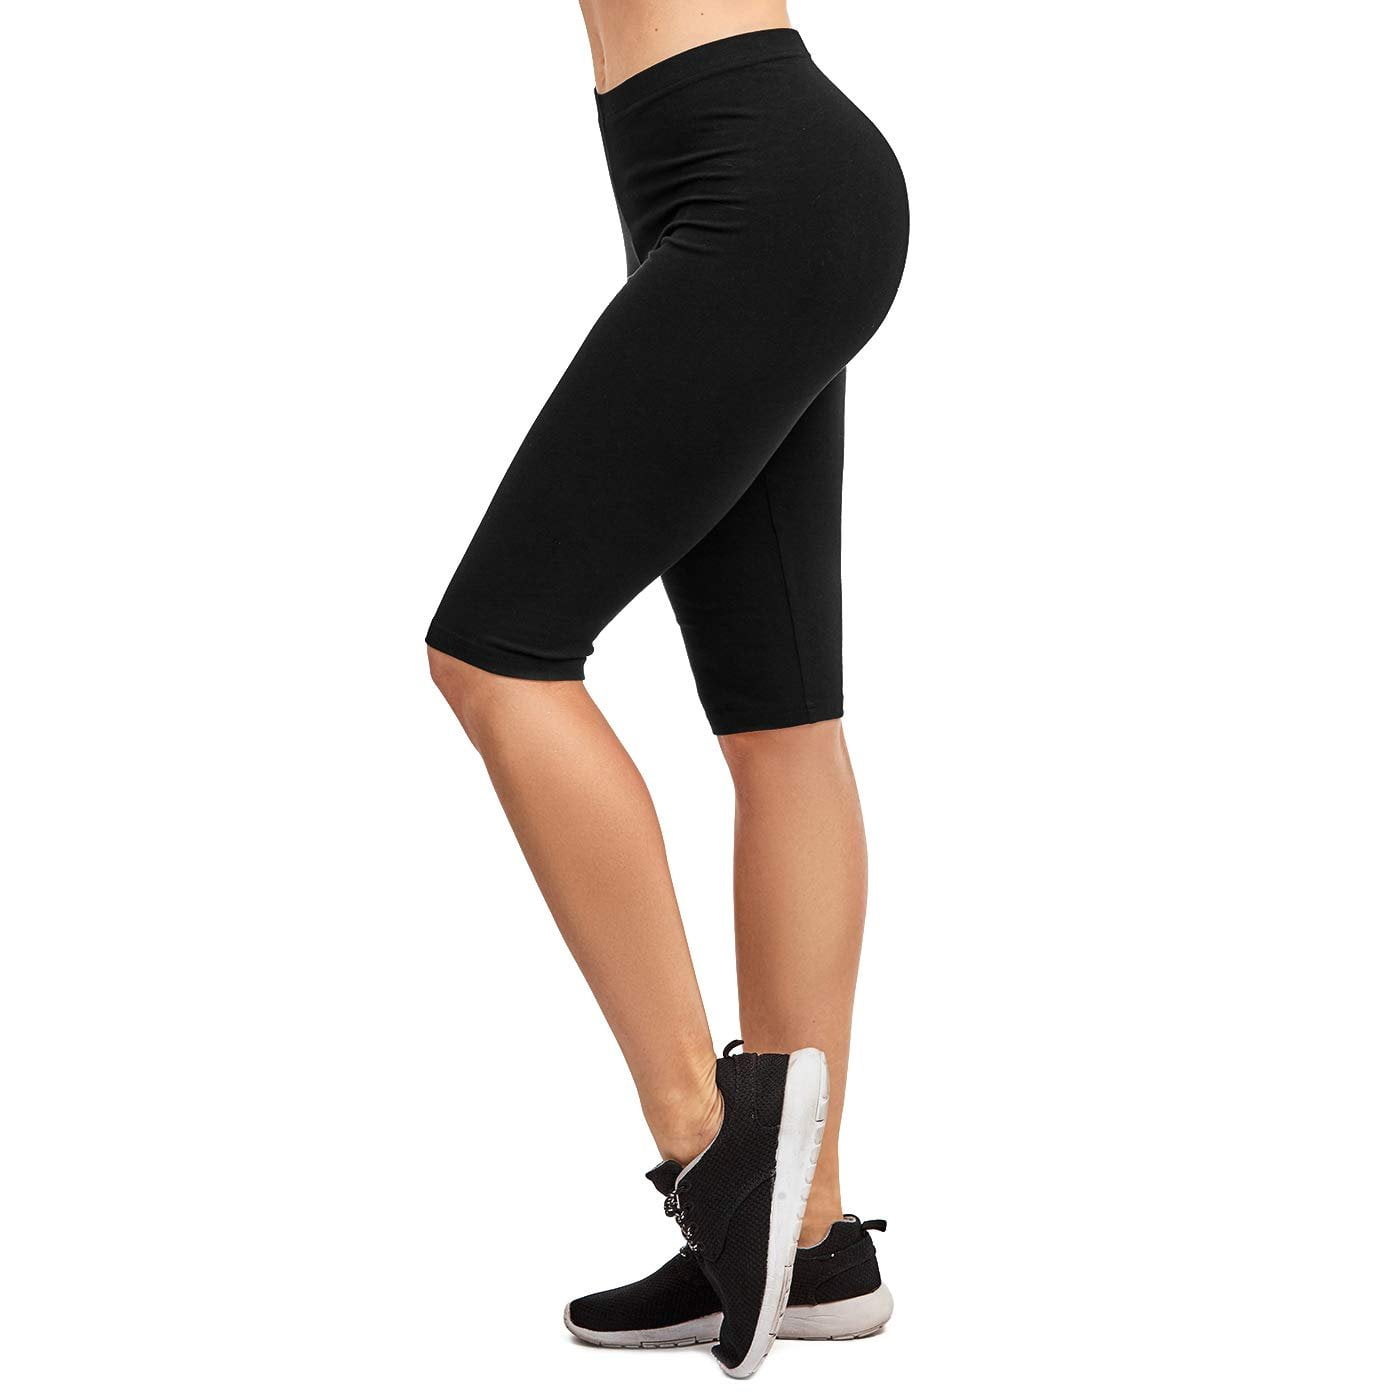 Zinmore Womens Capri Yoga Shorts Workout Pants Knee Length Tights Running Shorts Half Pants 